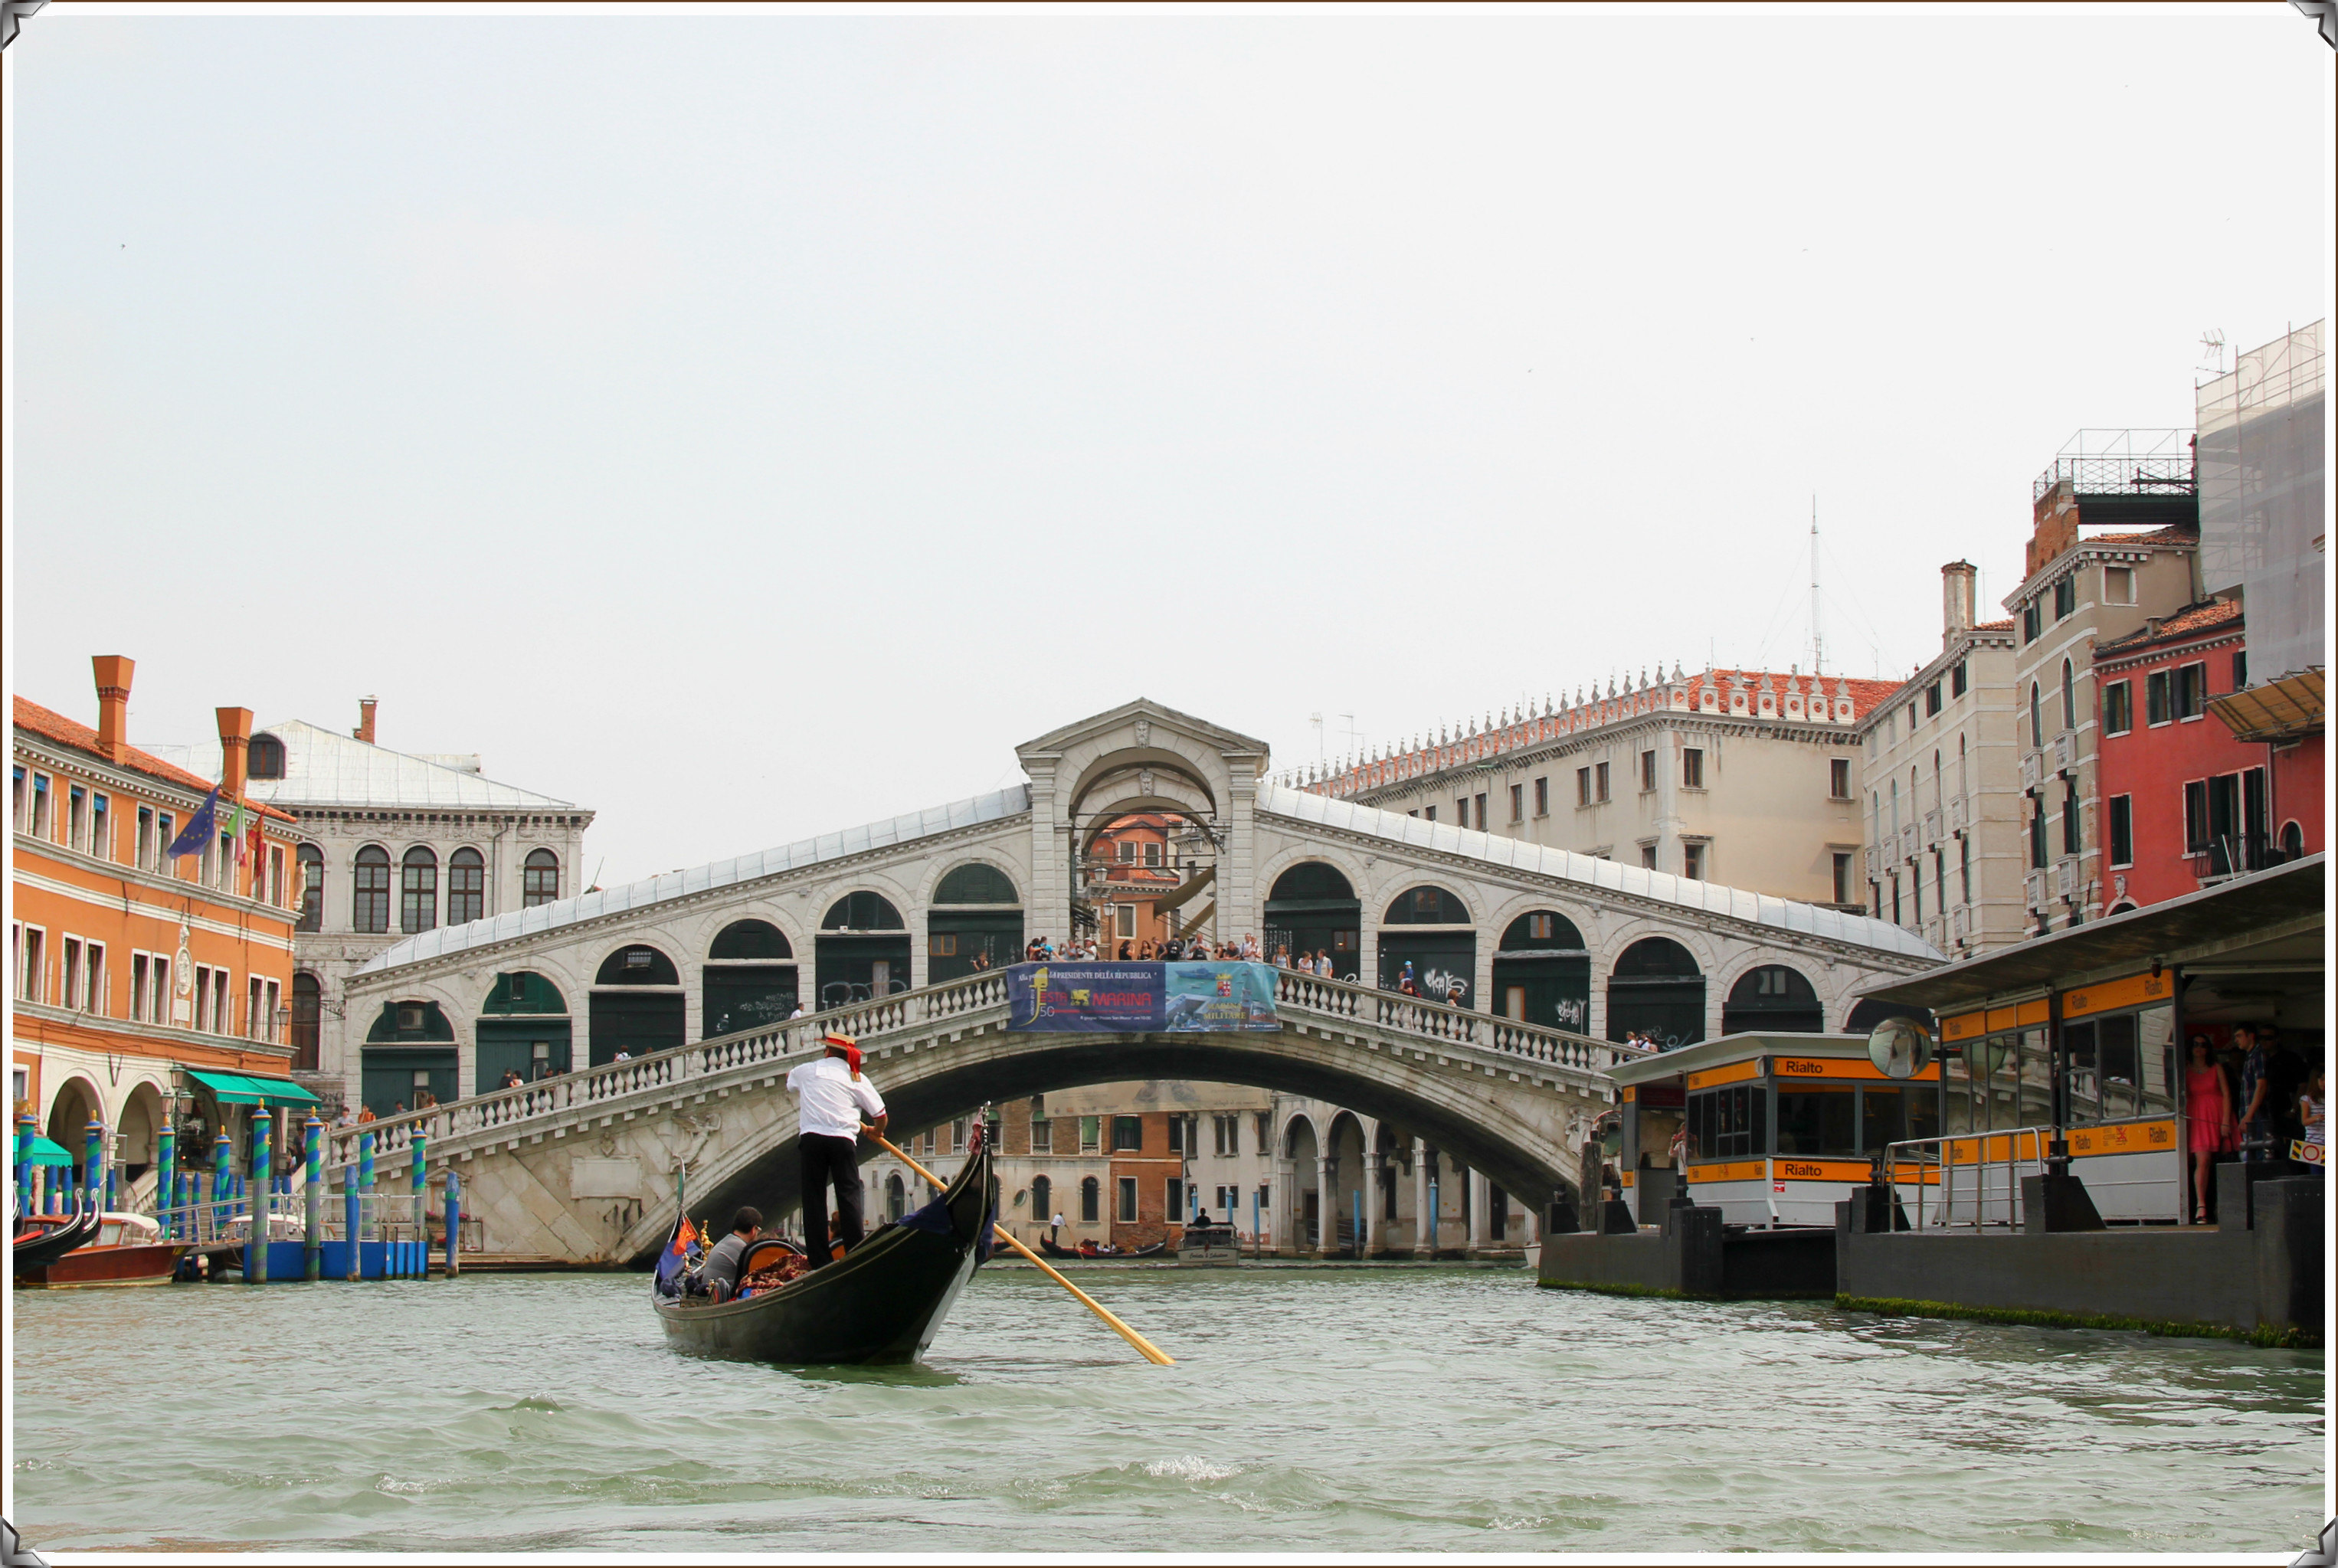 【携程攻略】威尼斯里亚托桥适合家庭亲子旅游吗,里亚托桥家庭亲子